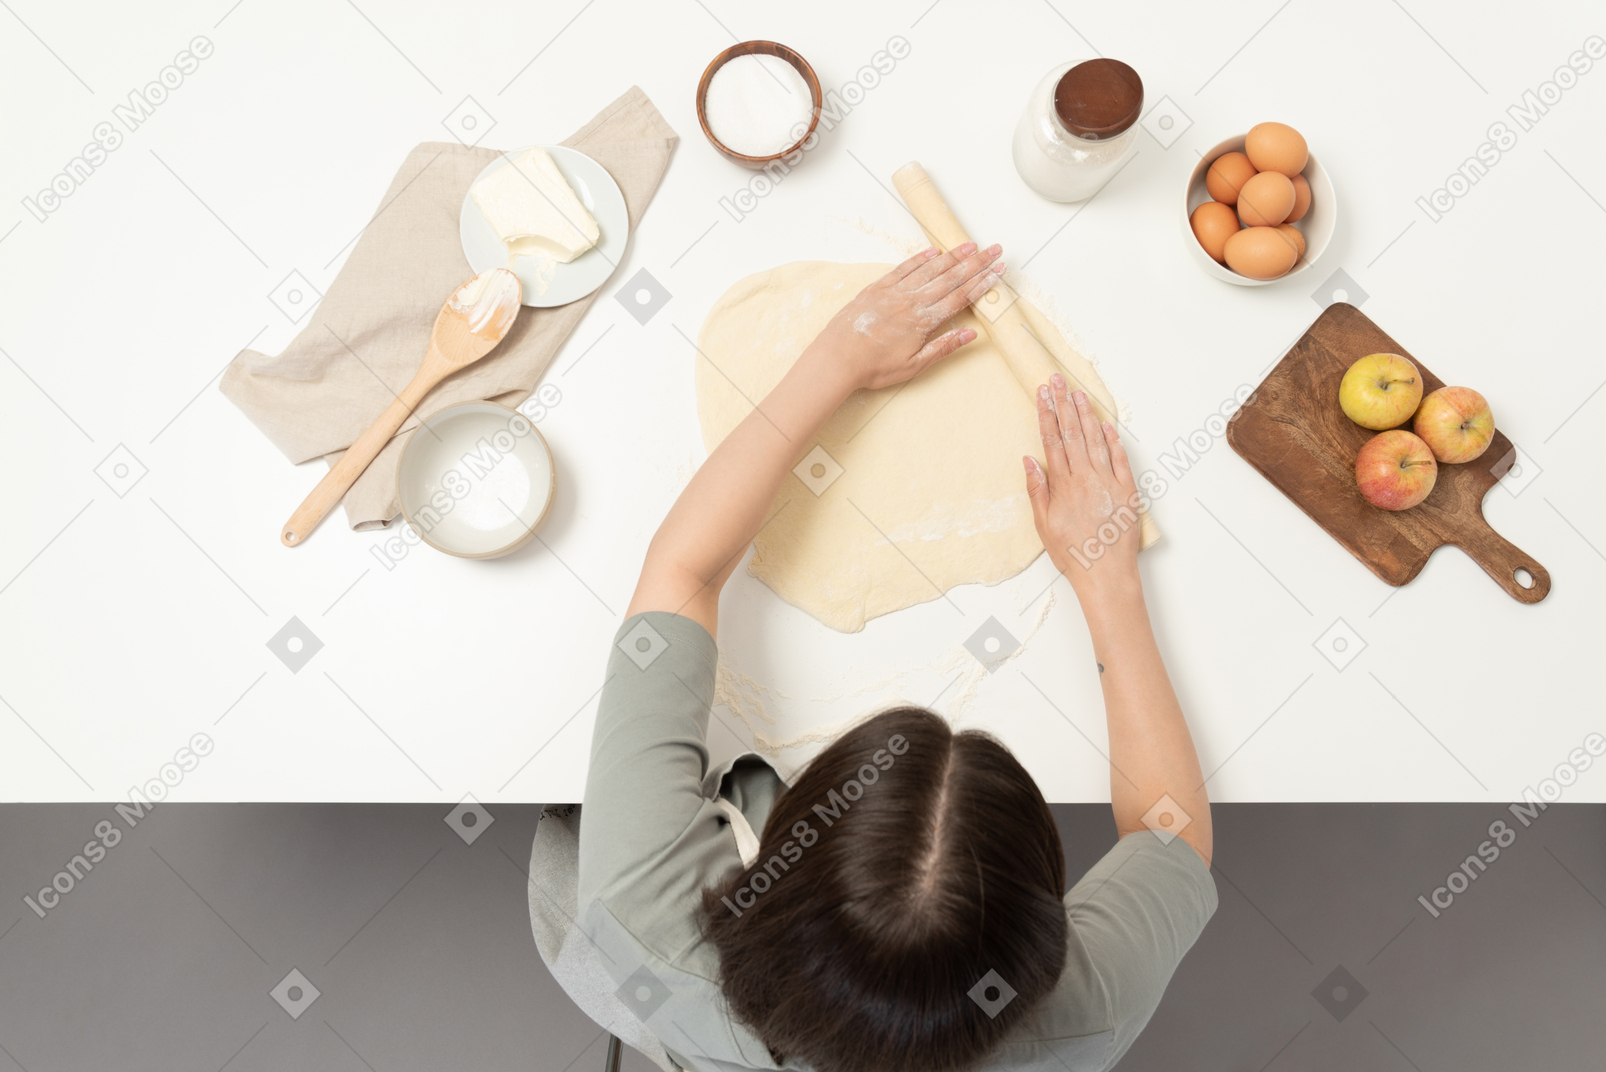 Eine bäckerin rollt keksteig aus